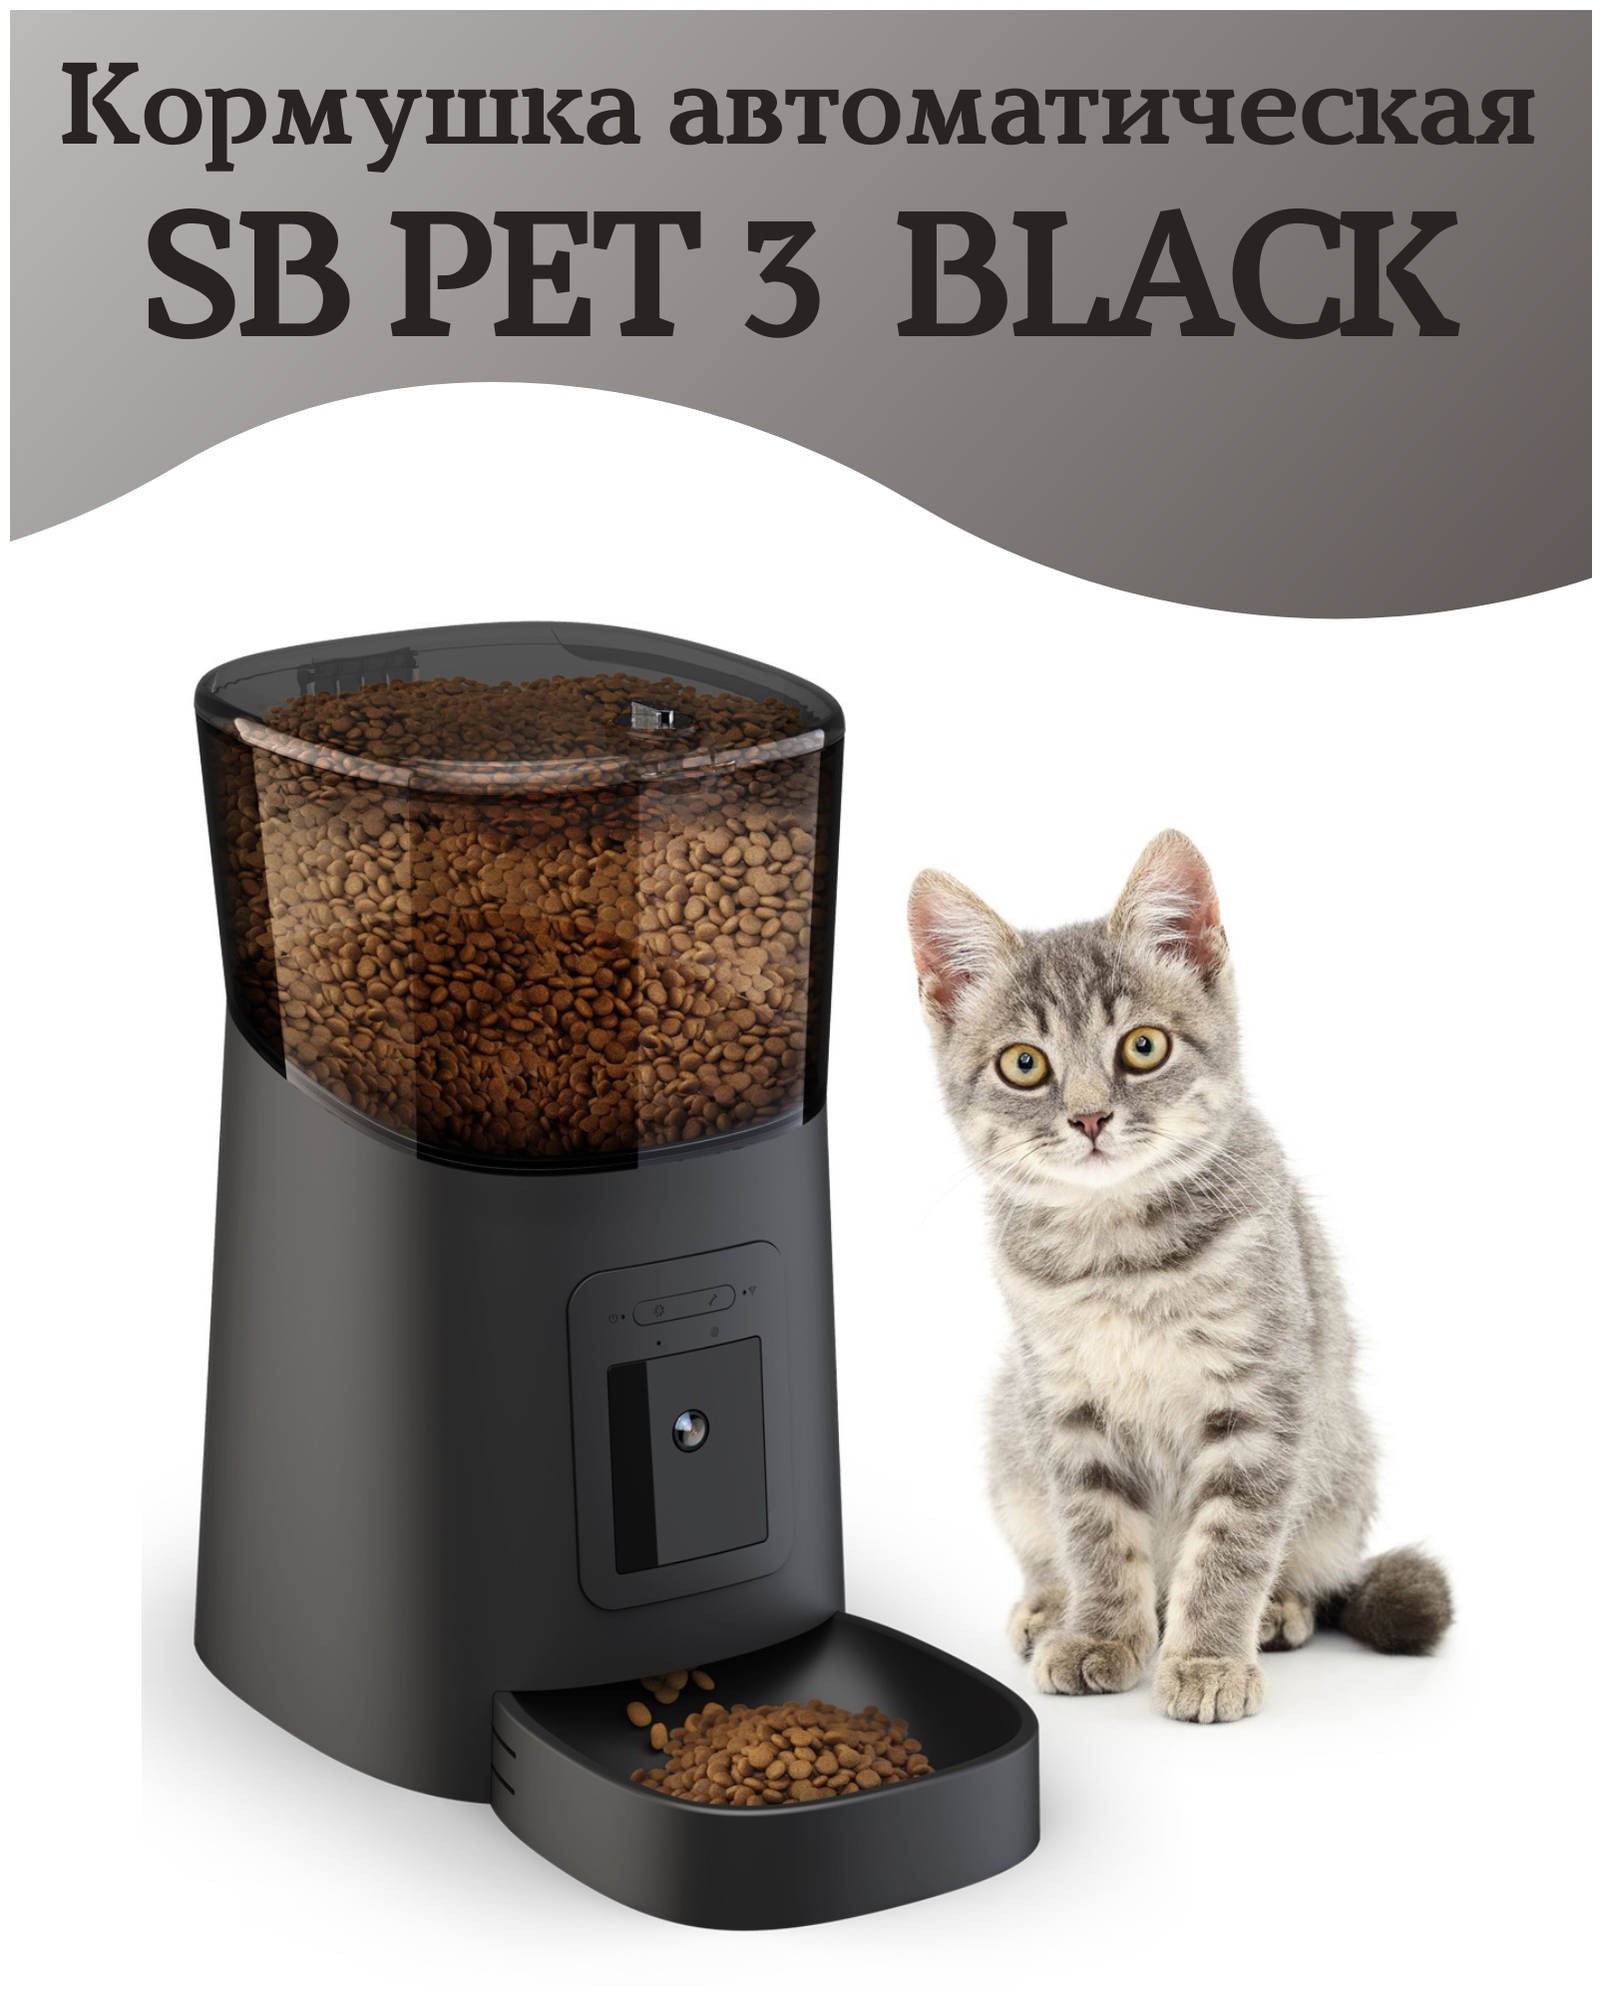 Кормушка автоматическая SB PET 3 BLACK для кошек, собак, 6л, с камерой видеонаблюдения 1080 р SAFEBURG